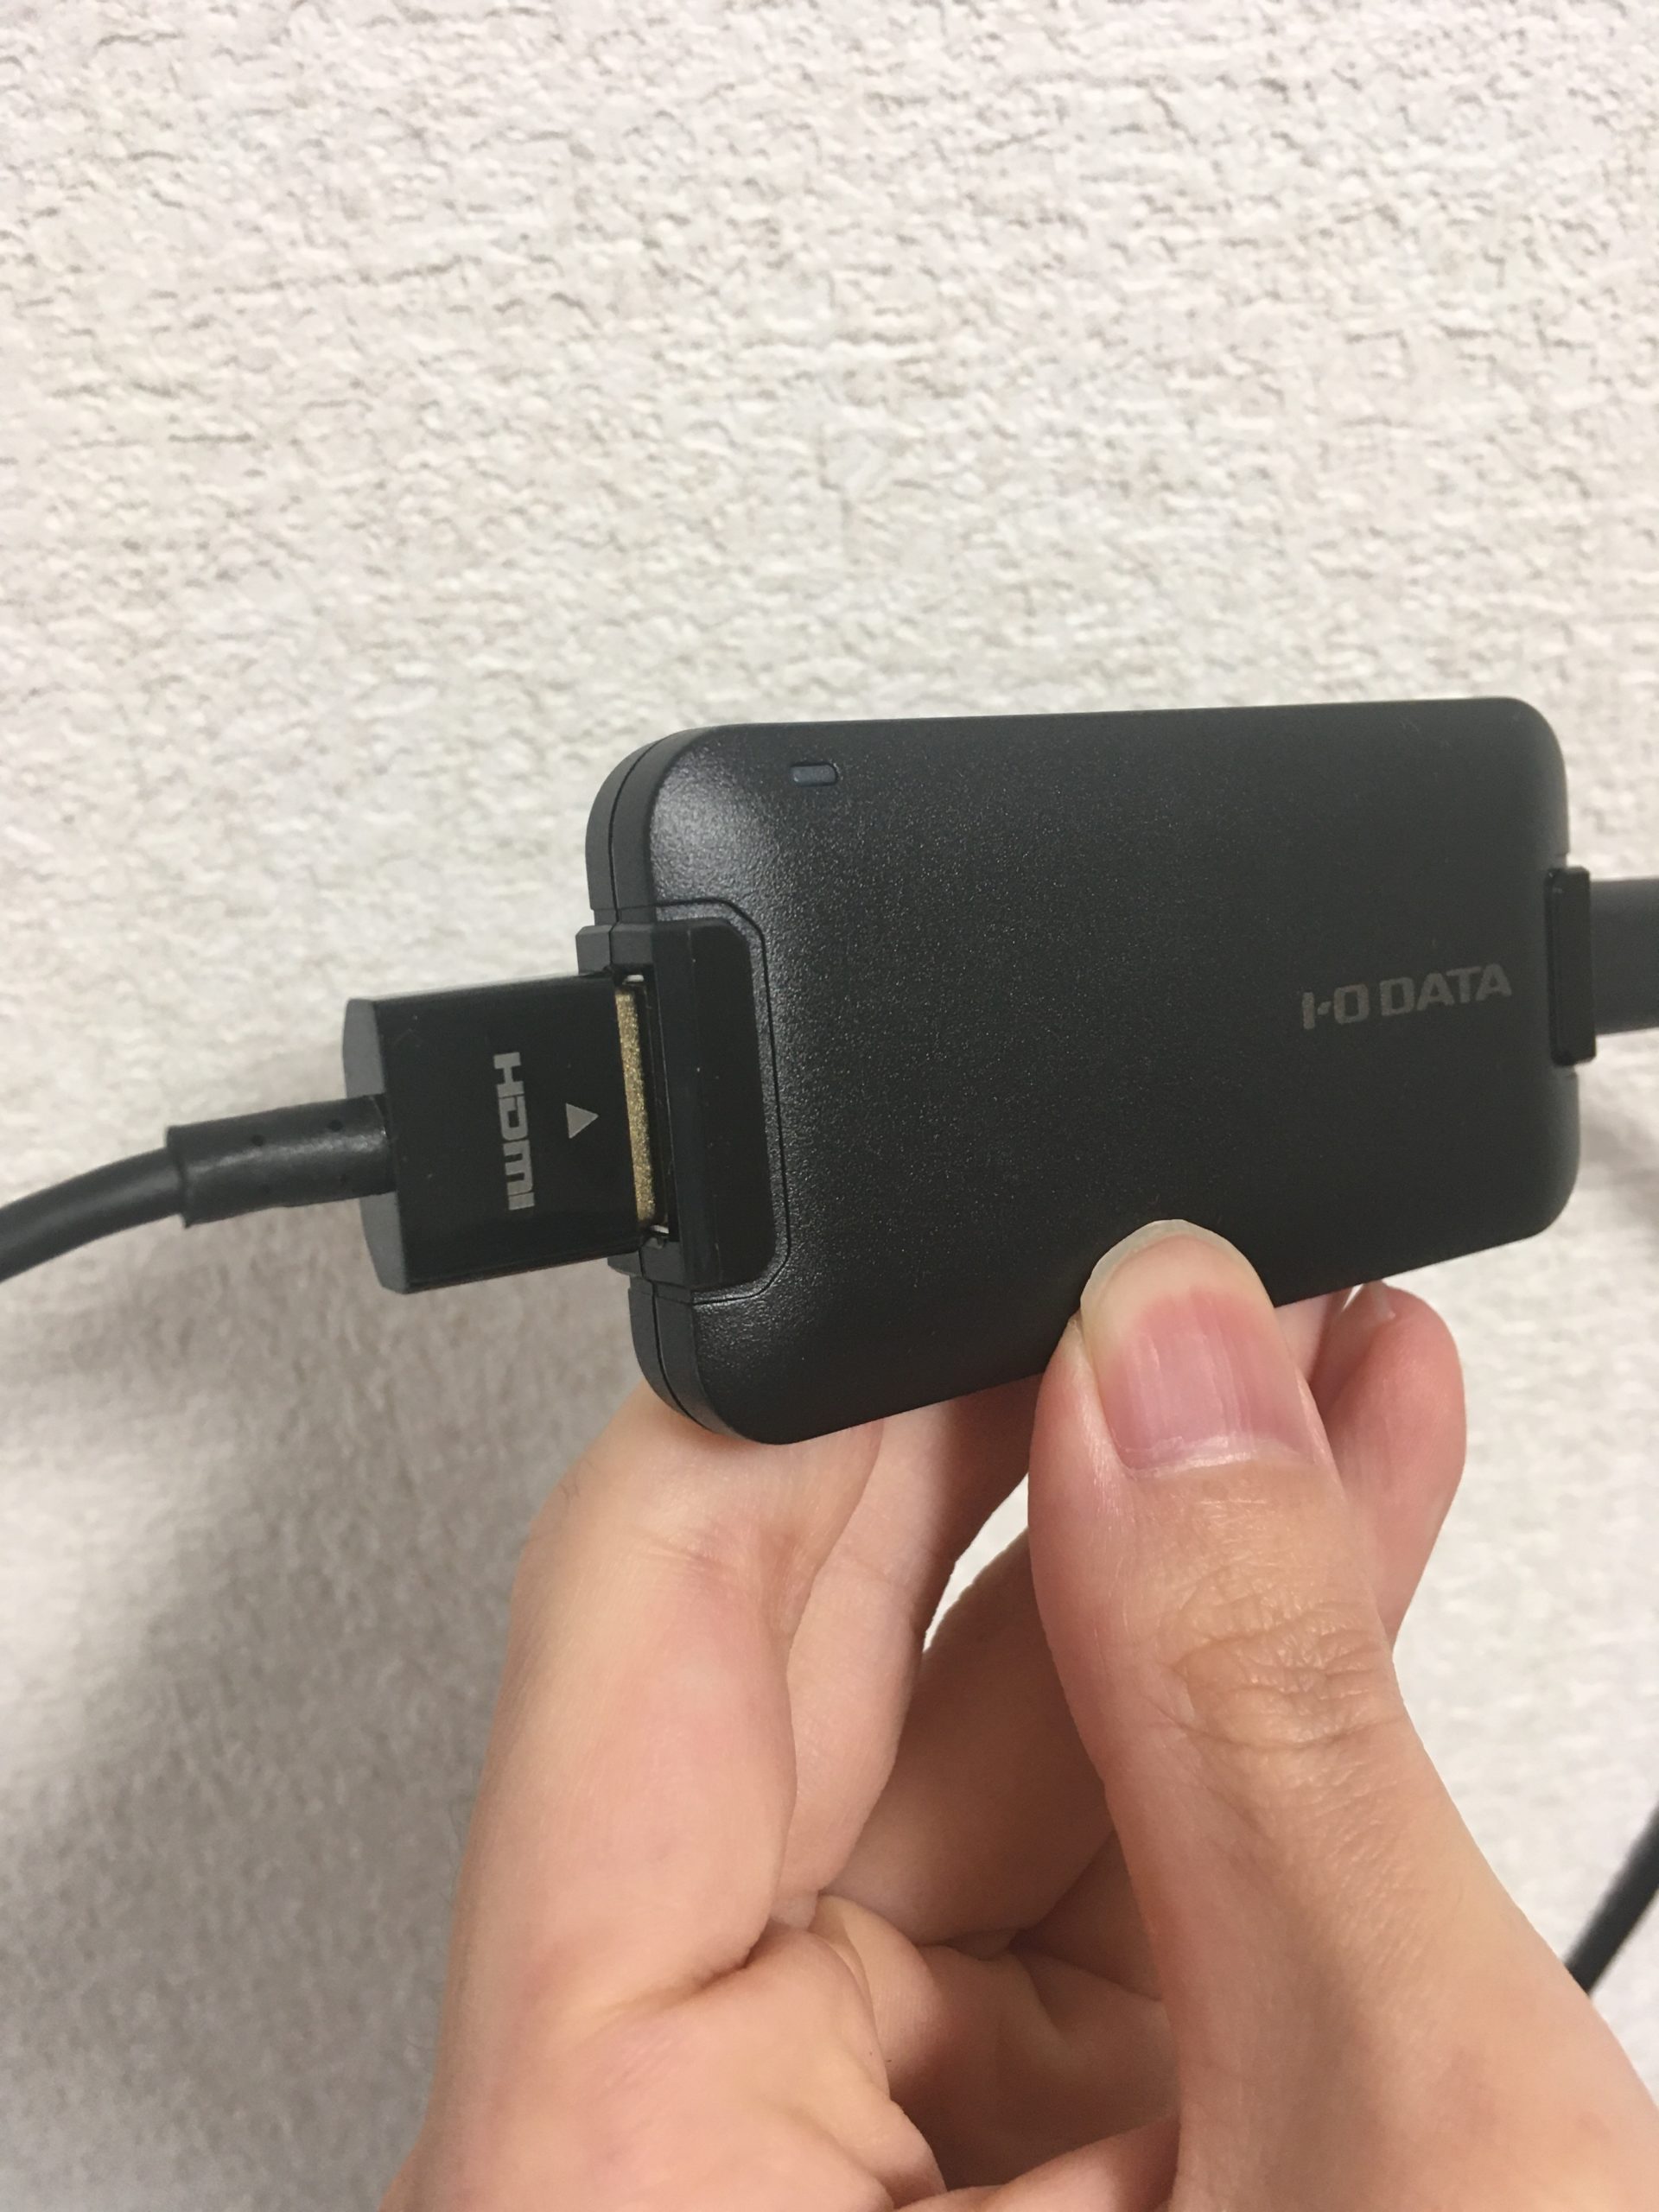 Mini HDMI端子の反対側のHDMI端子をI O DATAのキャプチャーに繋げる scaled